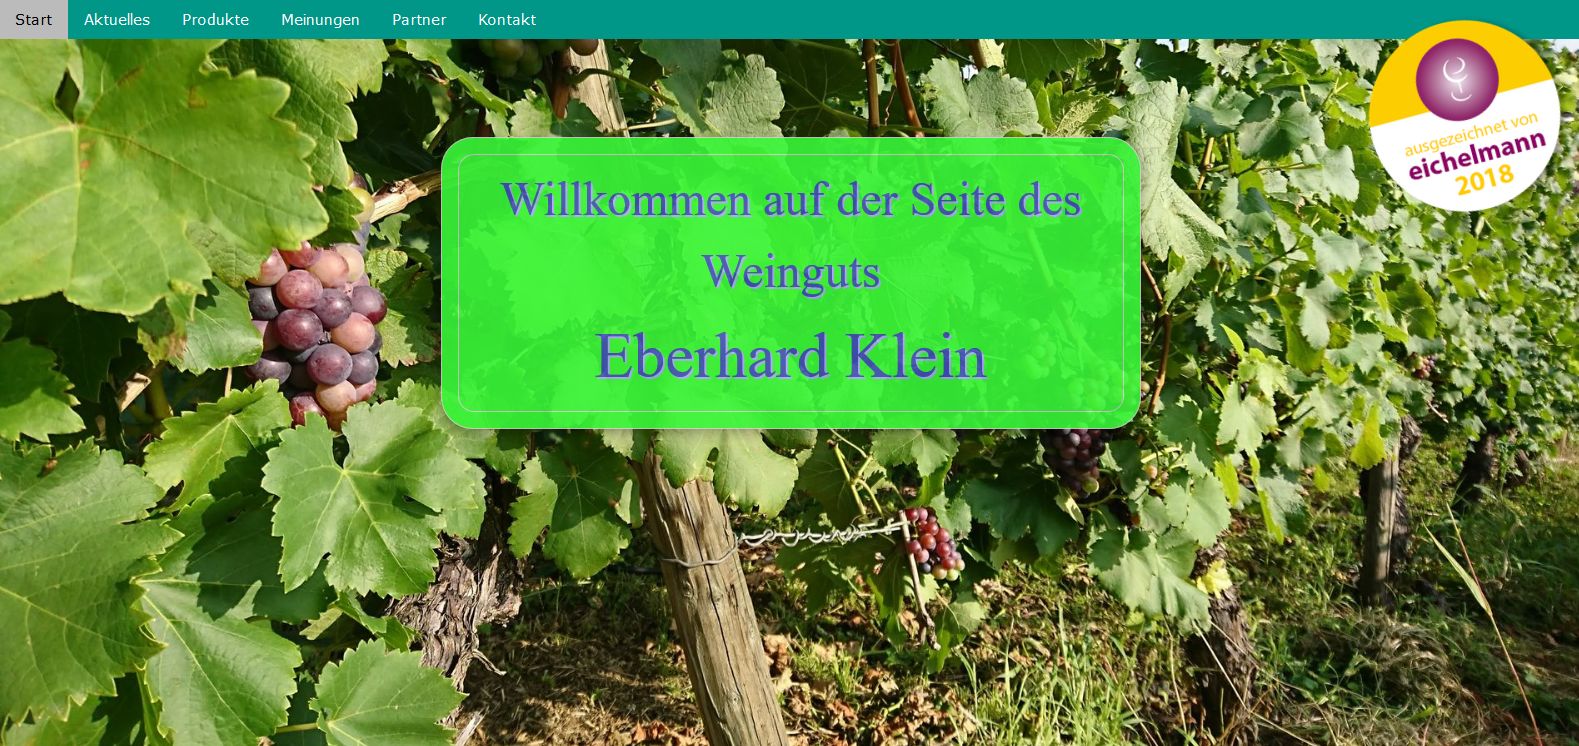 Weingut Eberhard Klein